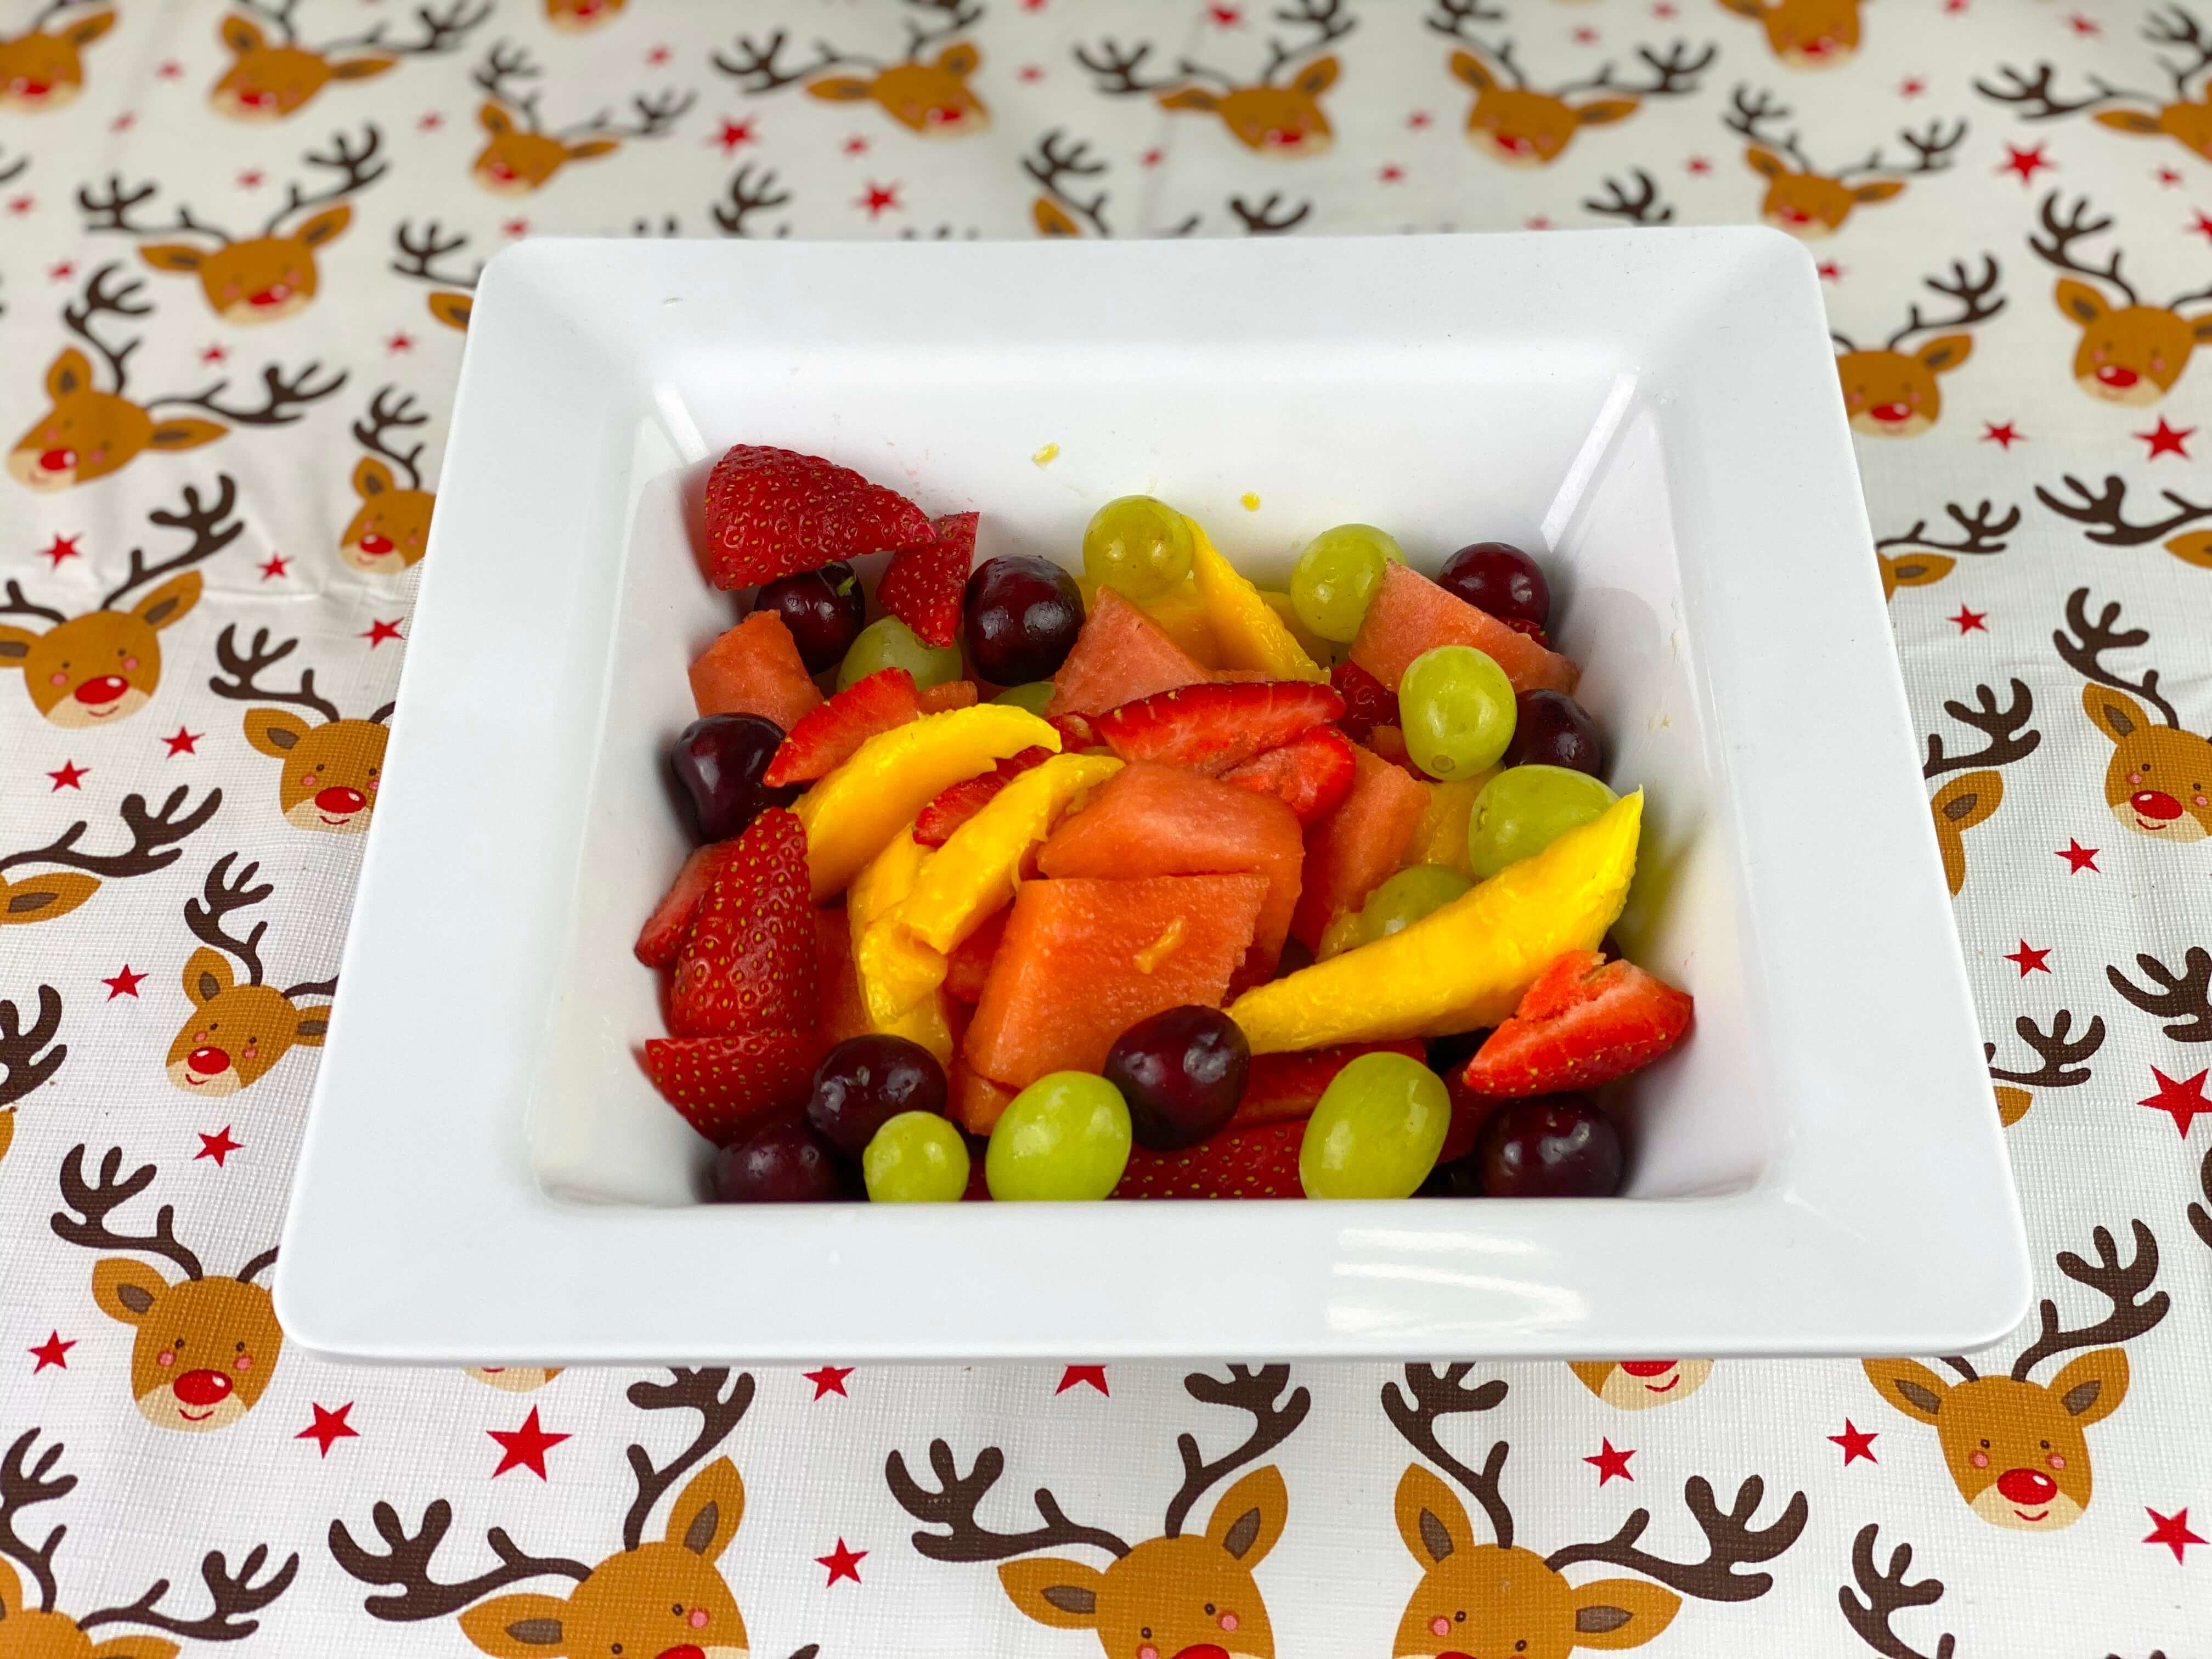 Christmas breakfast ideas - Fruit Salad